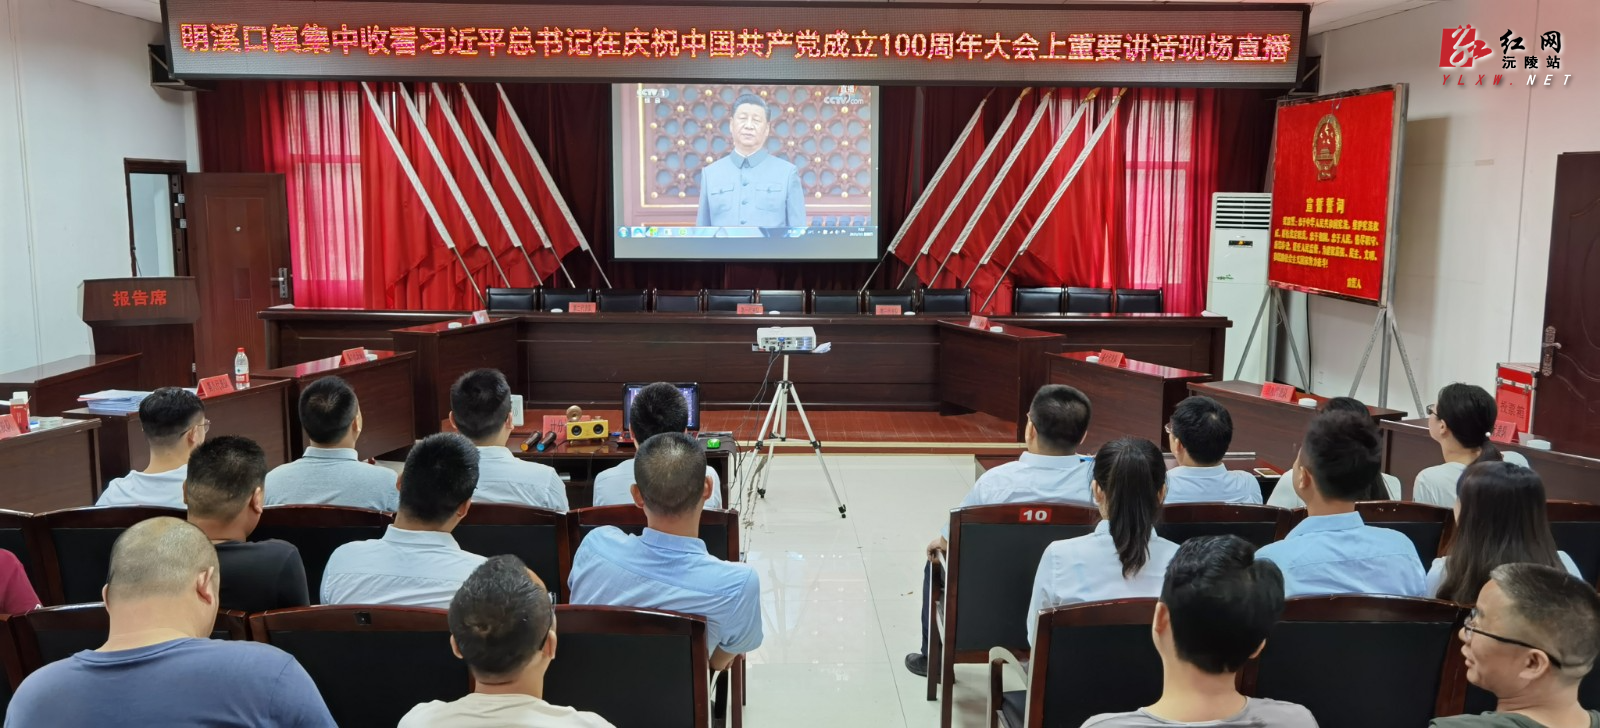 明溪口镇集中收看庆祝中国共产党成立100周年大会现场直播